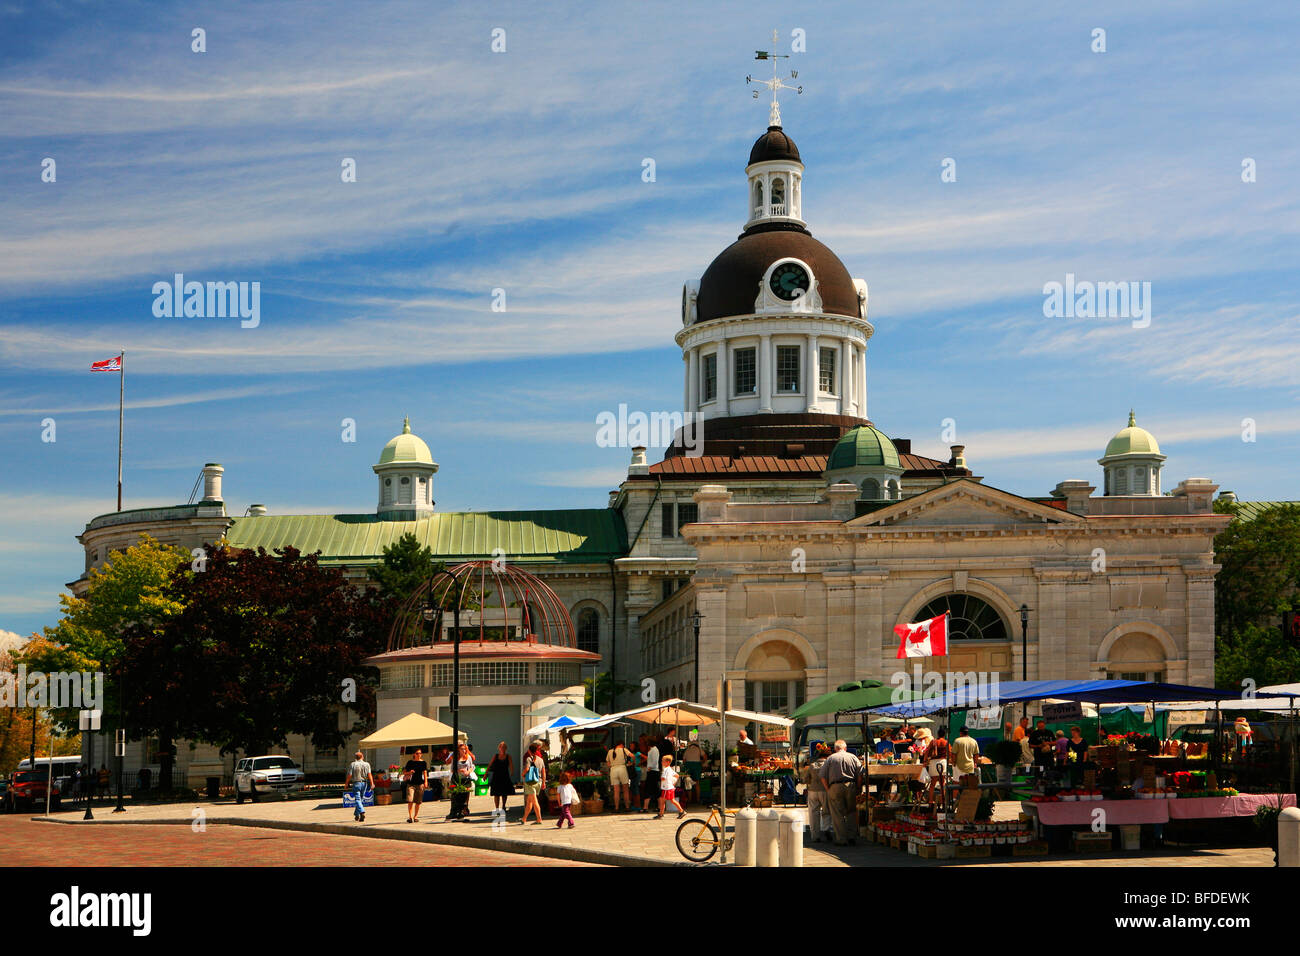 Sunday market and City Hall, Kingston, Ontario, Canada Stock Photo